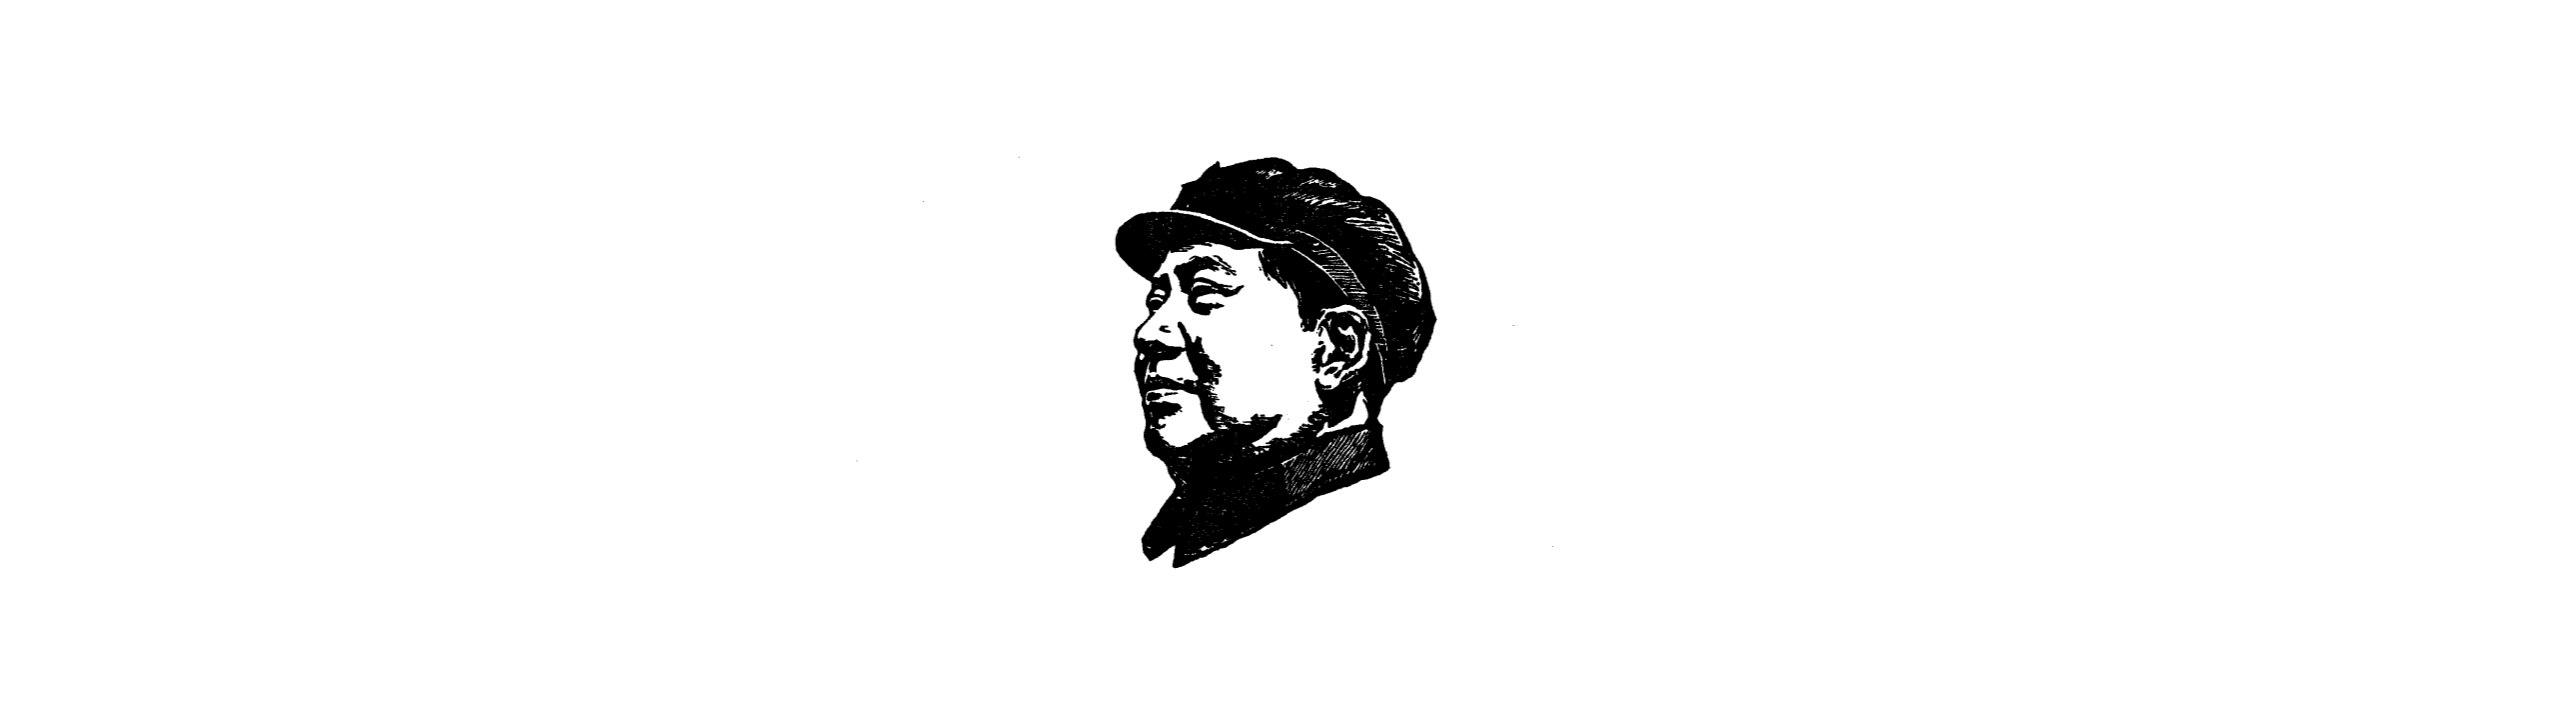 毛泽东《实践论》阅读摘录笔记